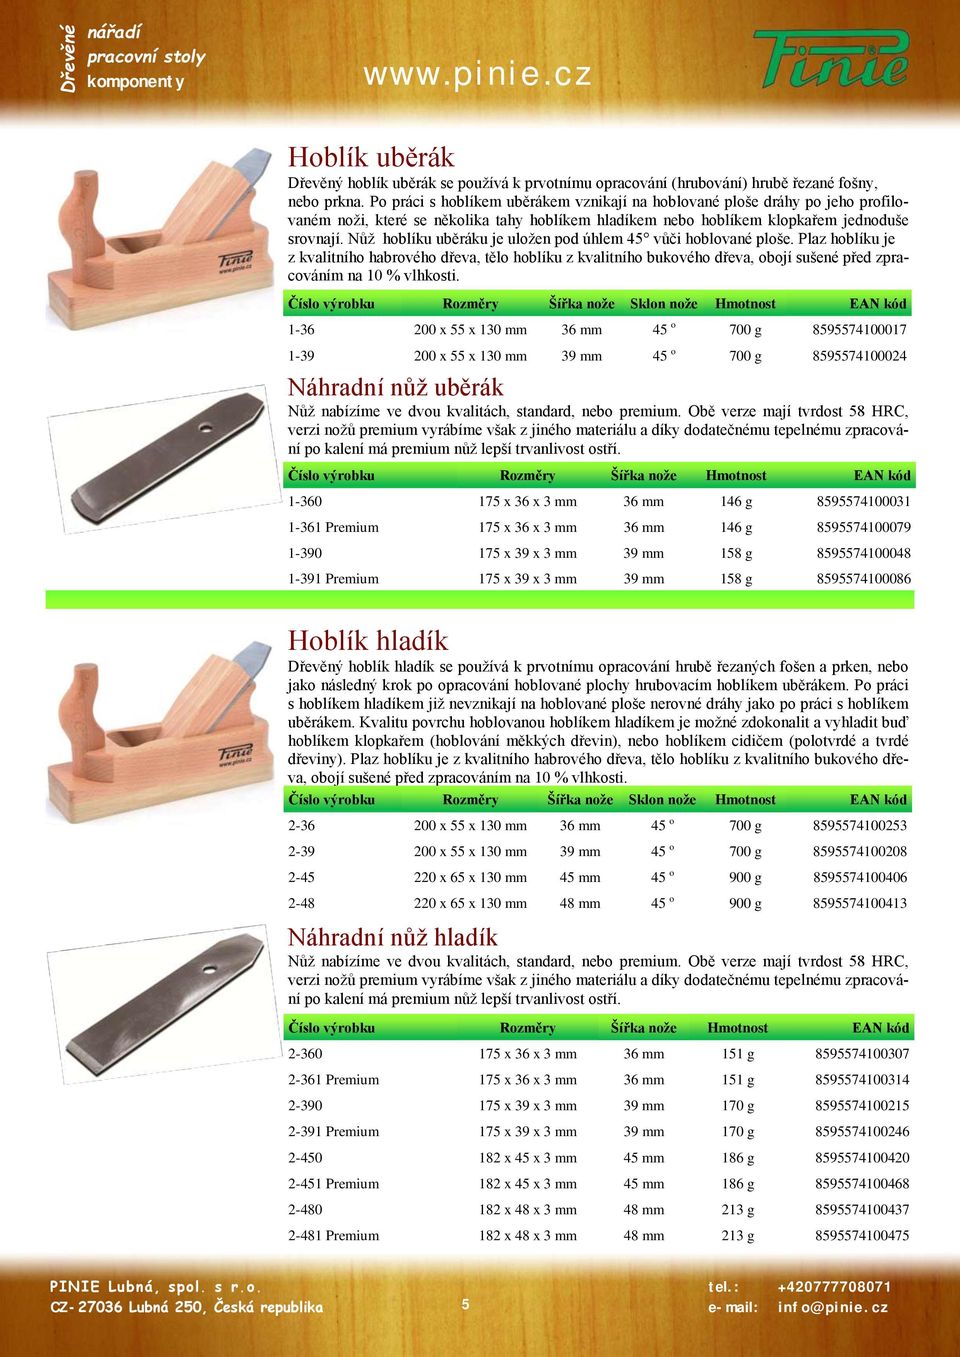 Nůž hoblíku uběráku je uložen pod úhlem 45 vůči hoblované ploše. Plaz hoblíku je z kvalitního habrového dřeva, tělo hoblíku z kvalitního bukového dřeva, obojí sušené před zpracováním na 10 % vlhkosti.